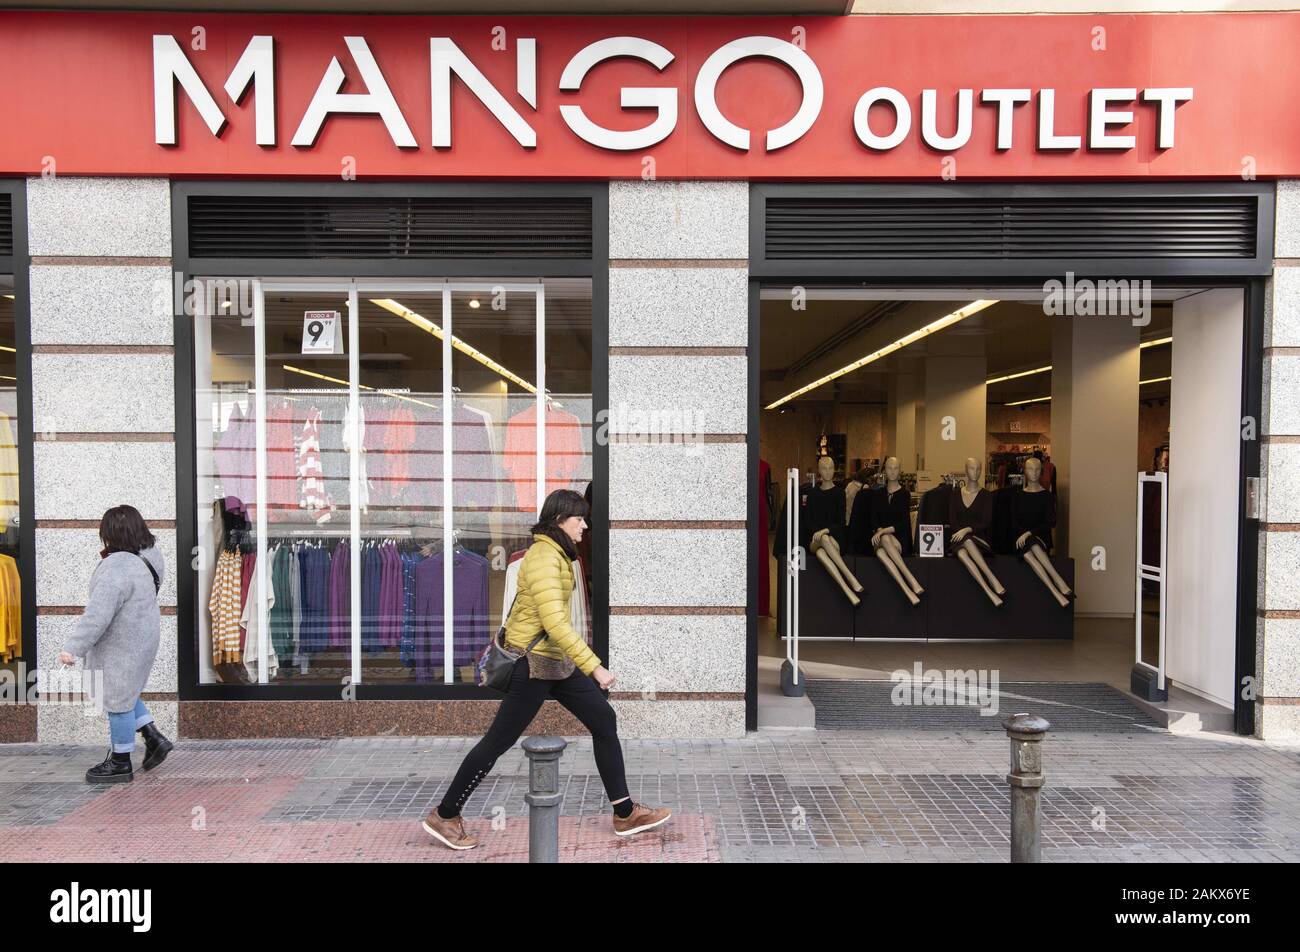 L'Espagne. Jan 9, 2020. Marque de vêtements multinationale espagnole Mango  outlet store en Espagne. Budrul Chukrut Crédit : SOPA/Images/ZUMA/Alamy Fil  Live News Photo Stock - Alamy